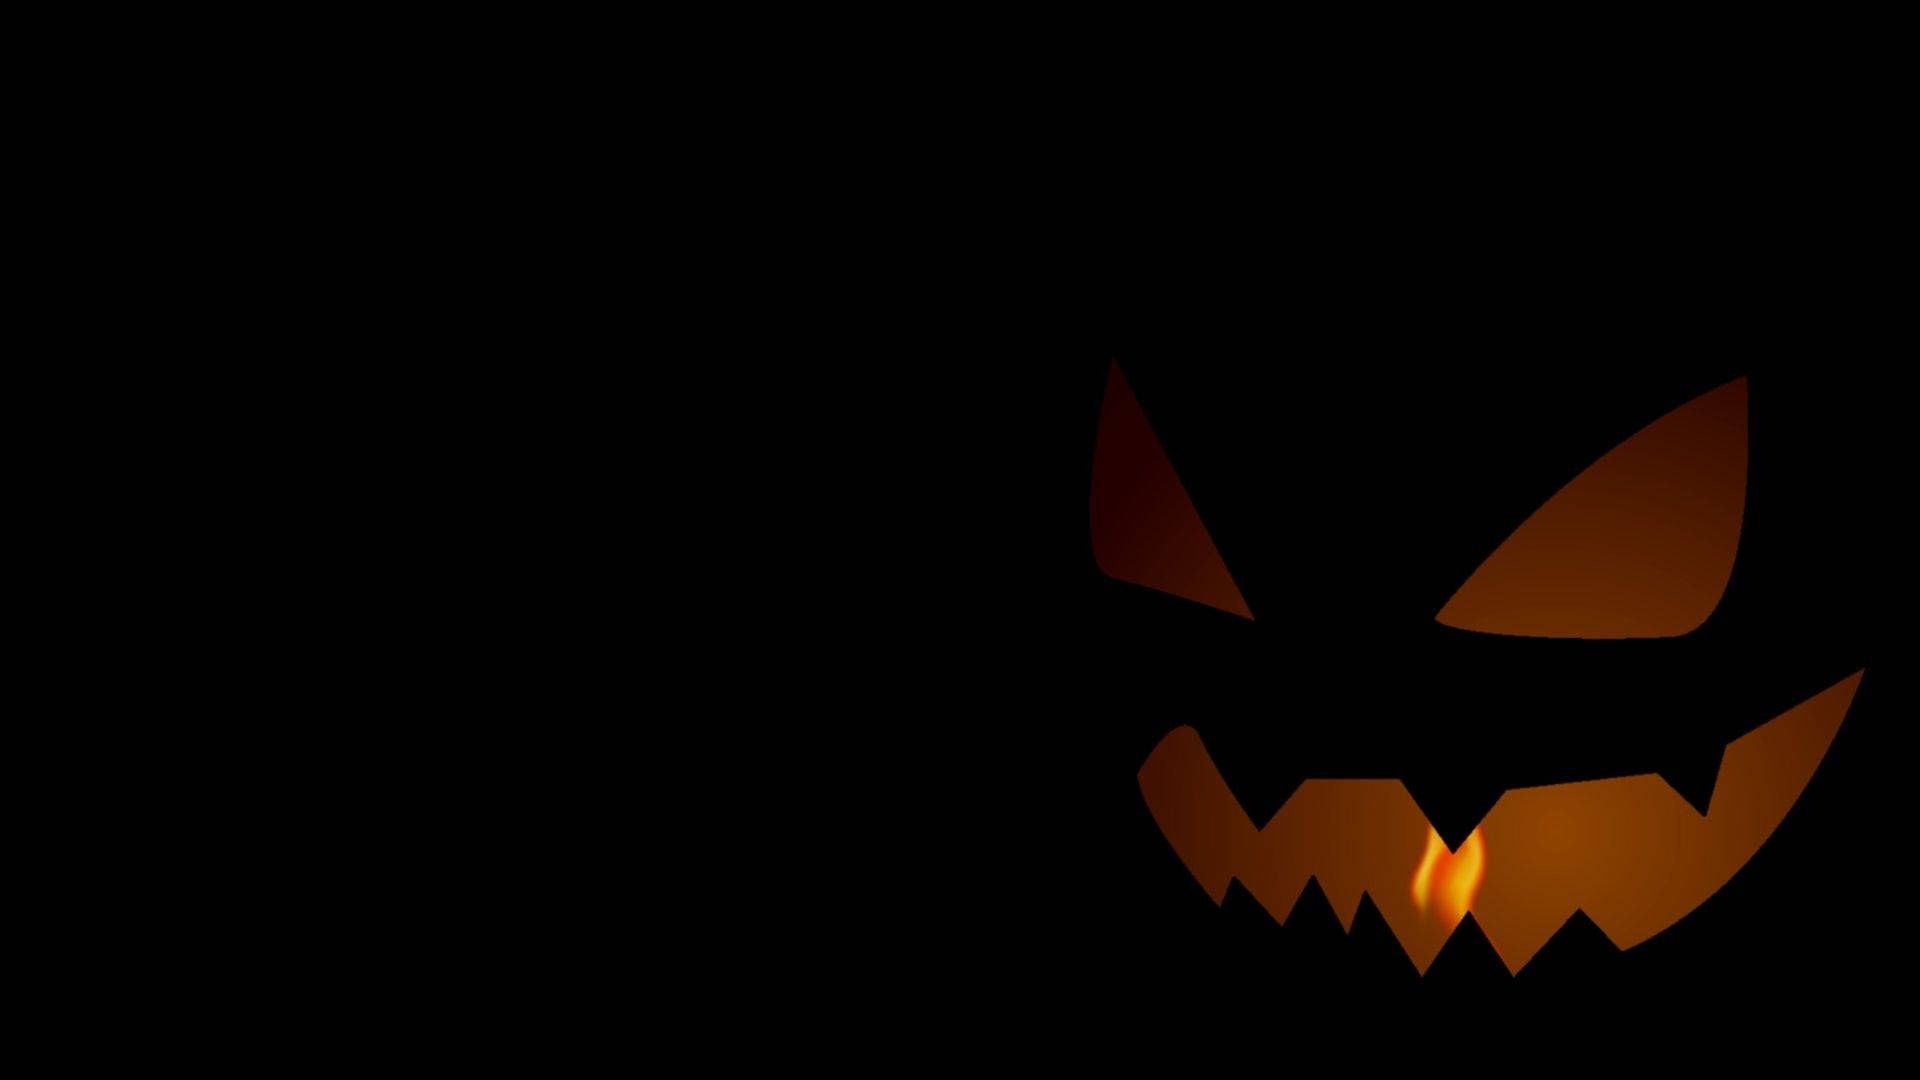 A pumpkin face in the dark - Halloween desktop